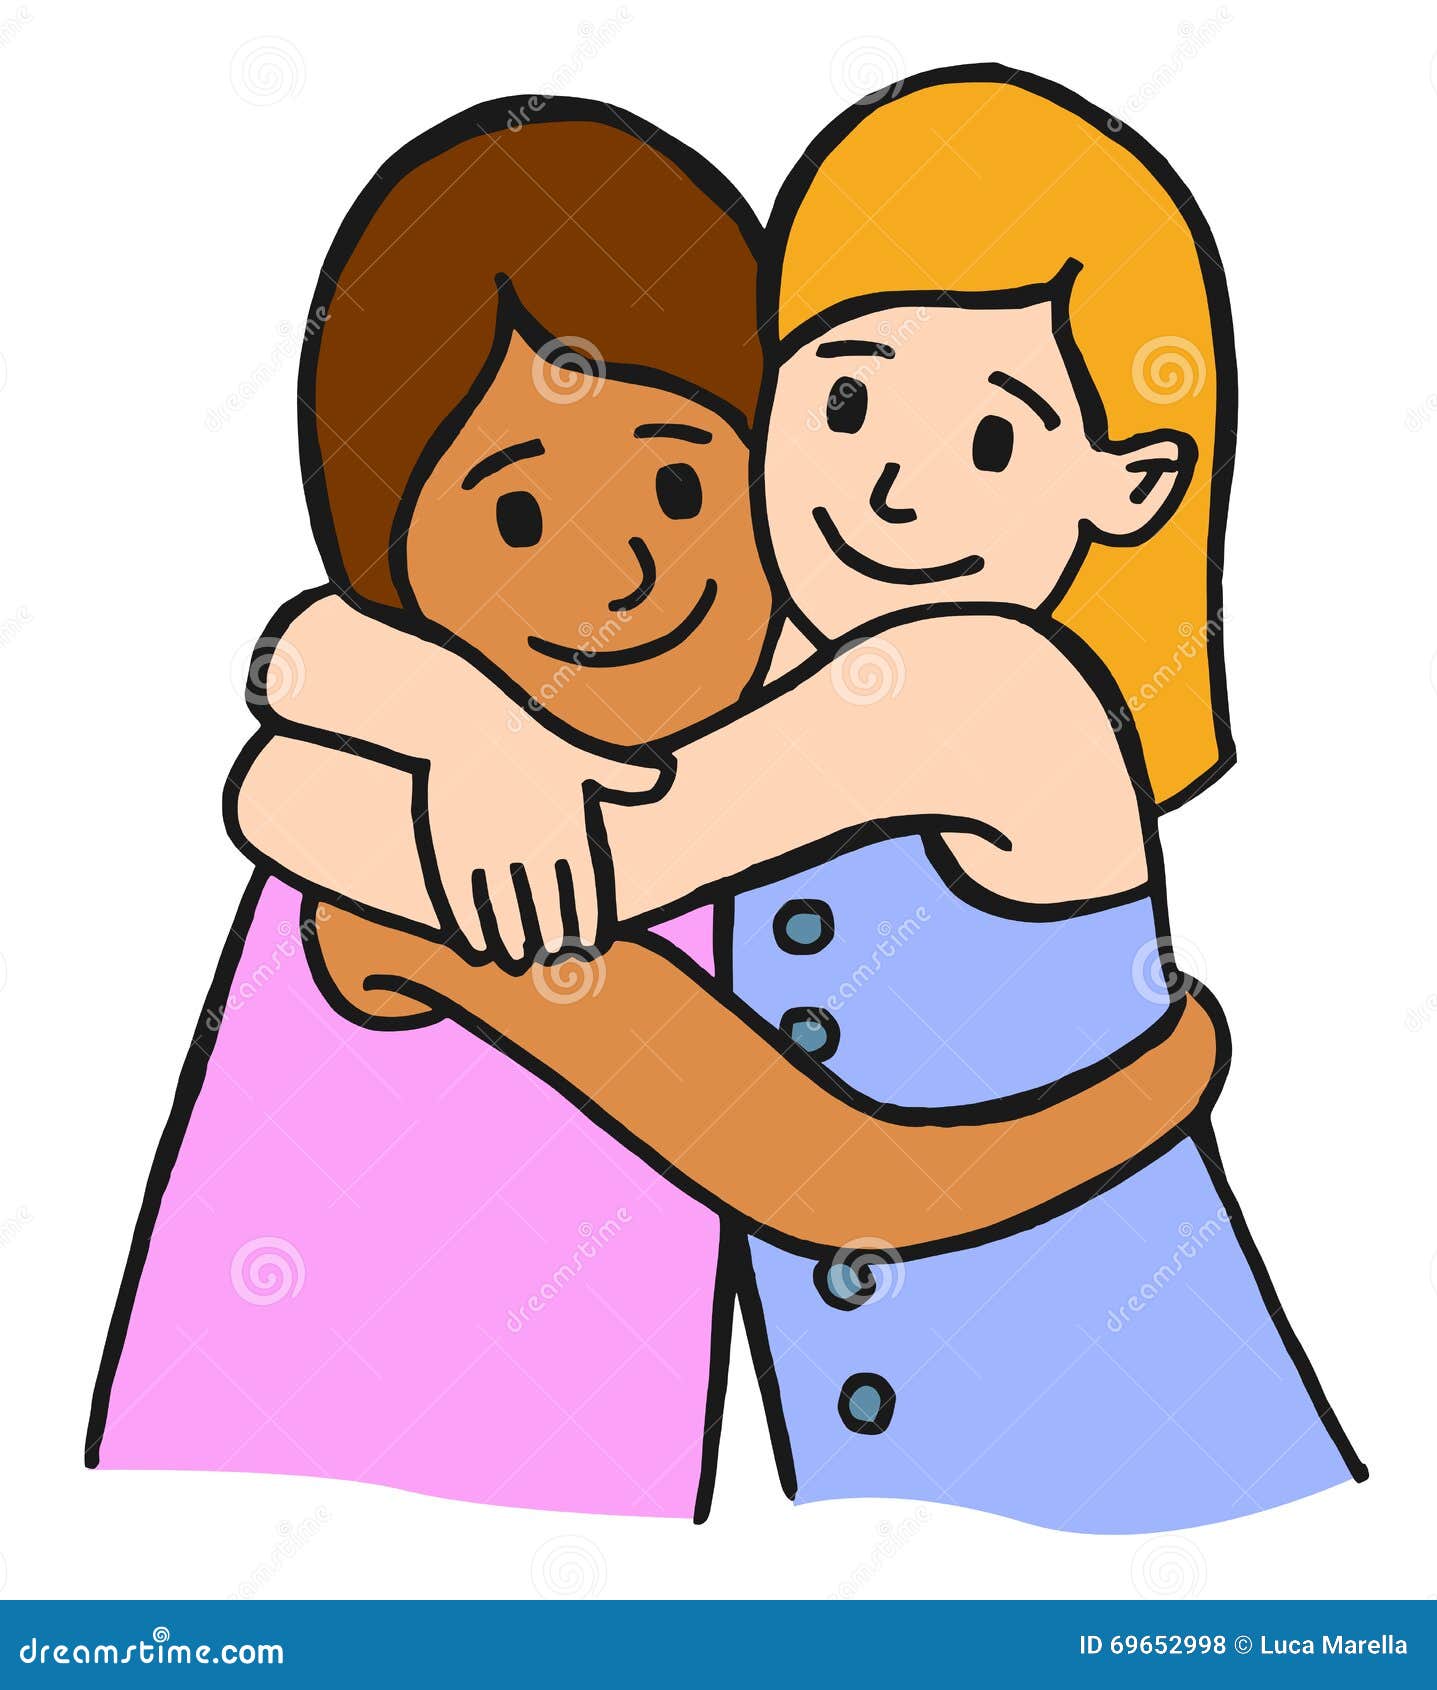 Hugging children friends stock vector. Image of cartoonish - 69652998